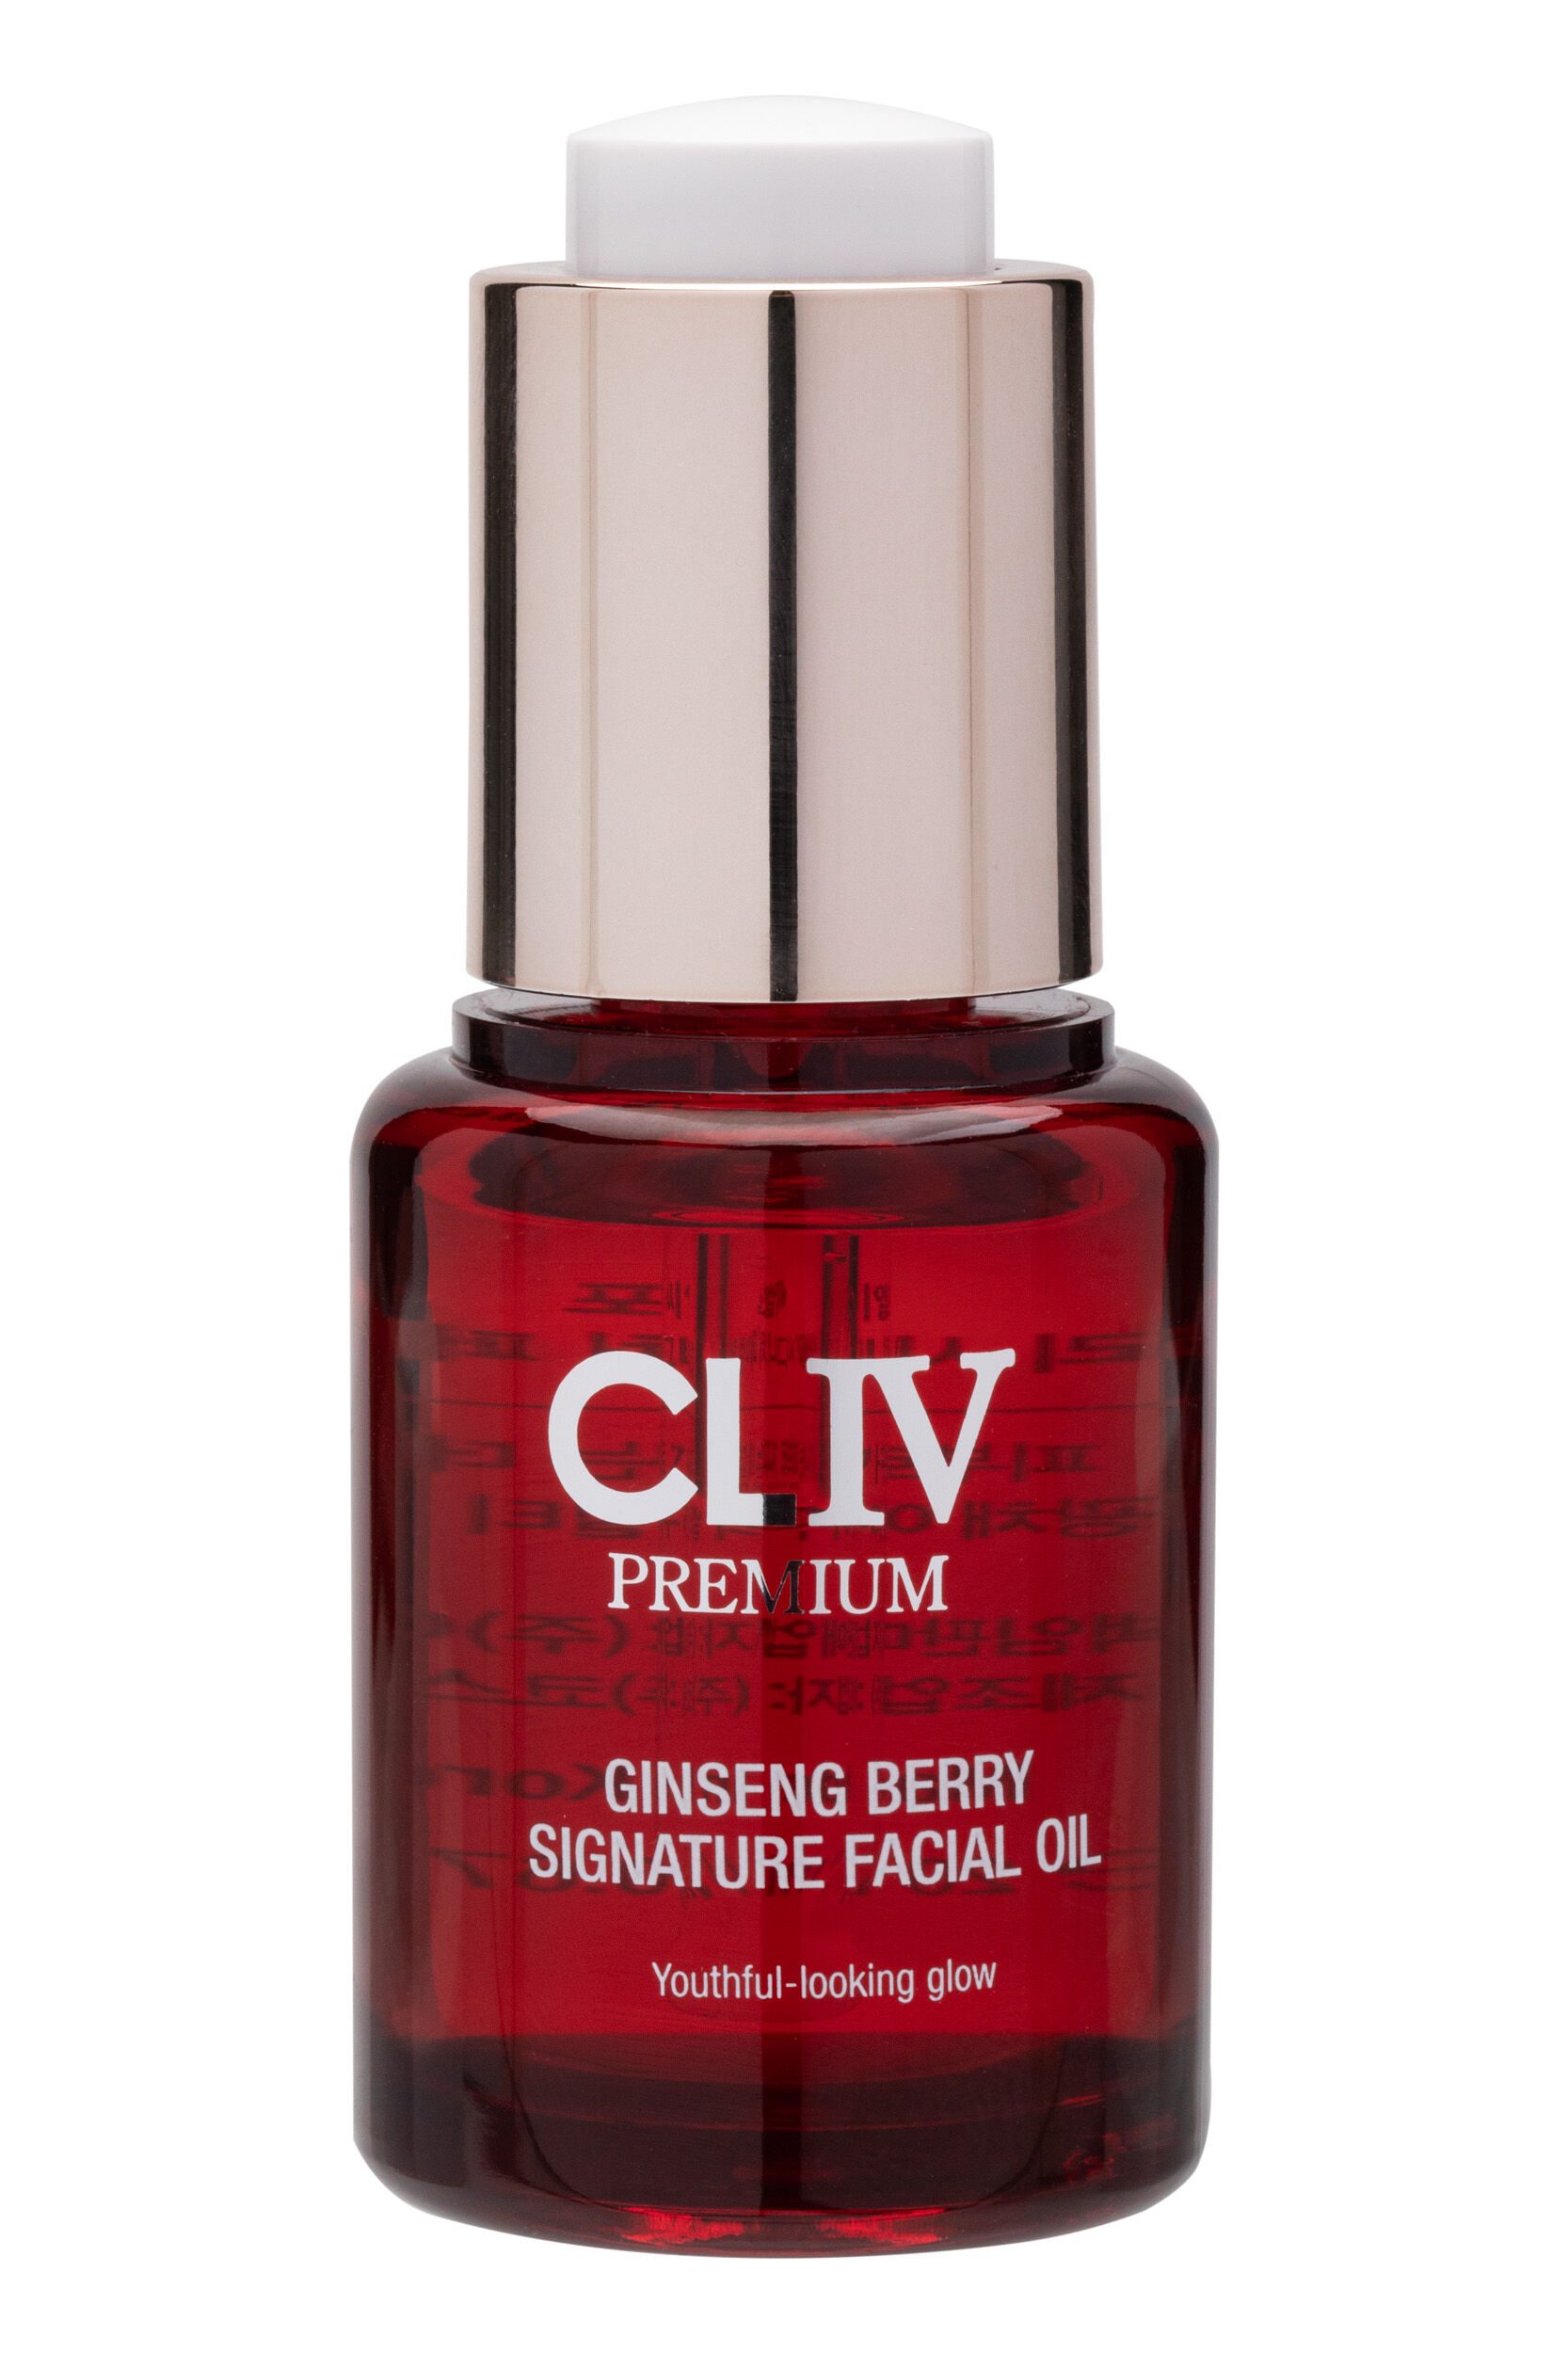 цена Омолаживающее и осветляющее масло для лица с ягодами женьшеня Cliv Premium, 20 мл